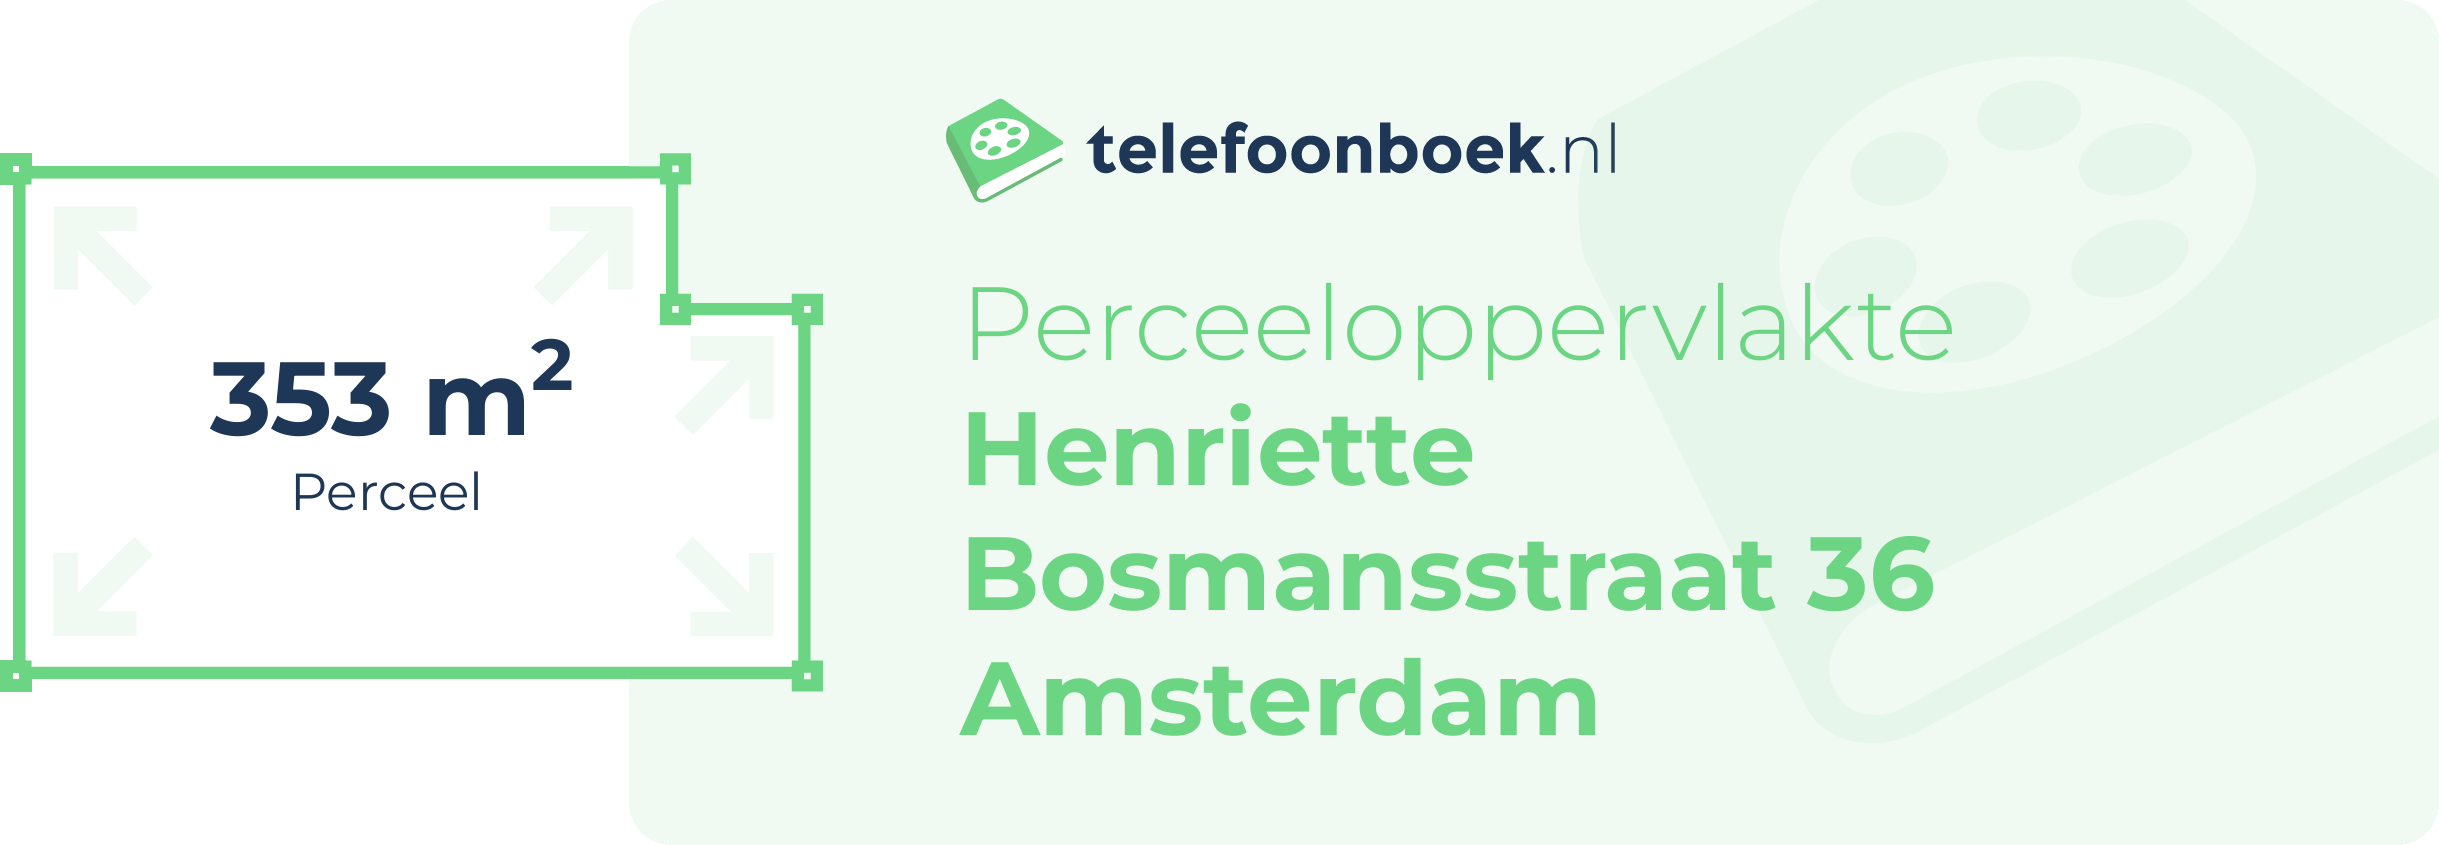 Perceeloppervlakte Henriette Bosmansstraat 36 Amsterdam